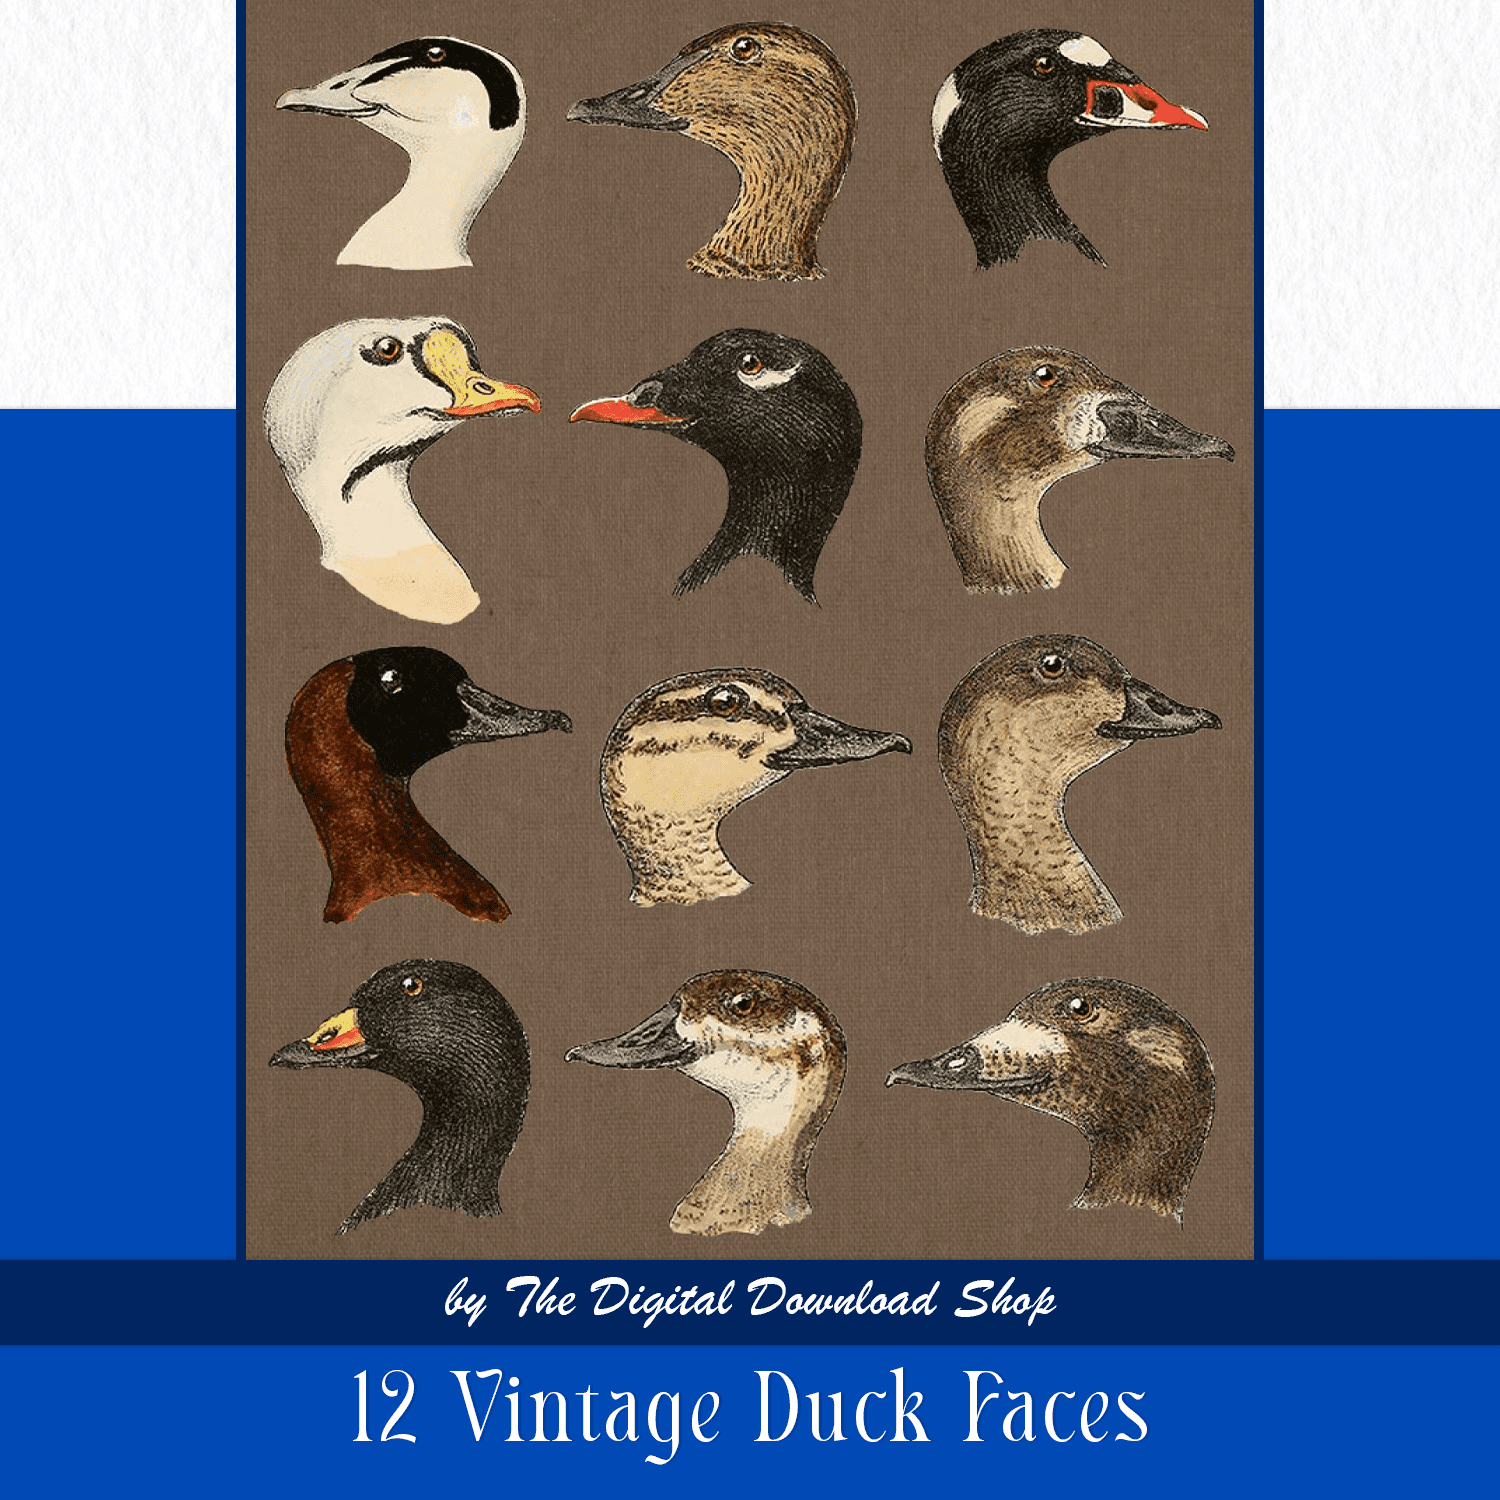 12 vintage duck faces.